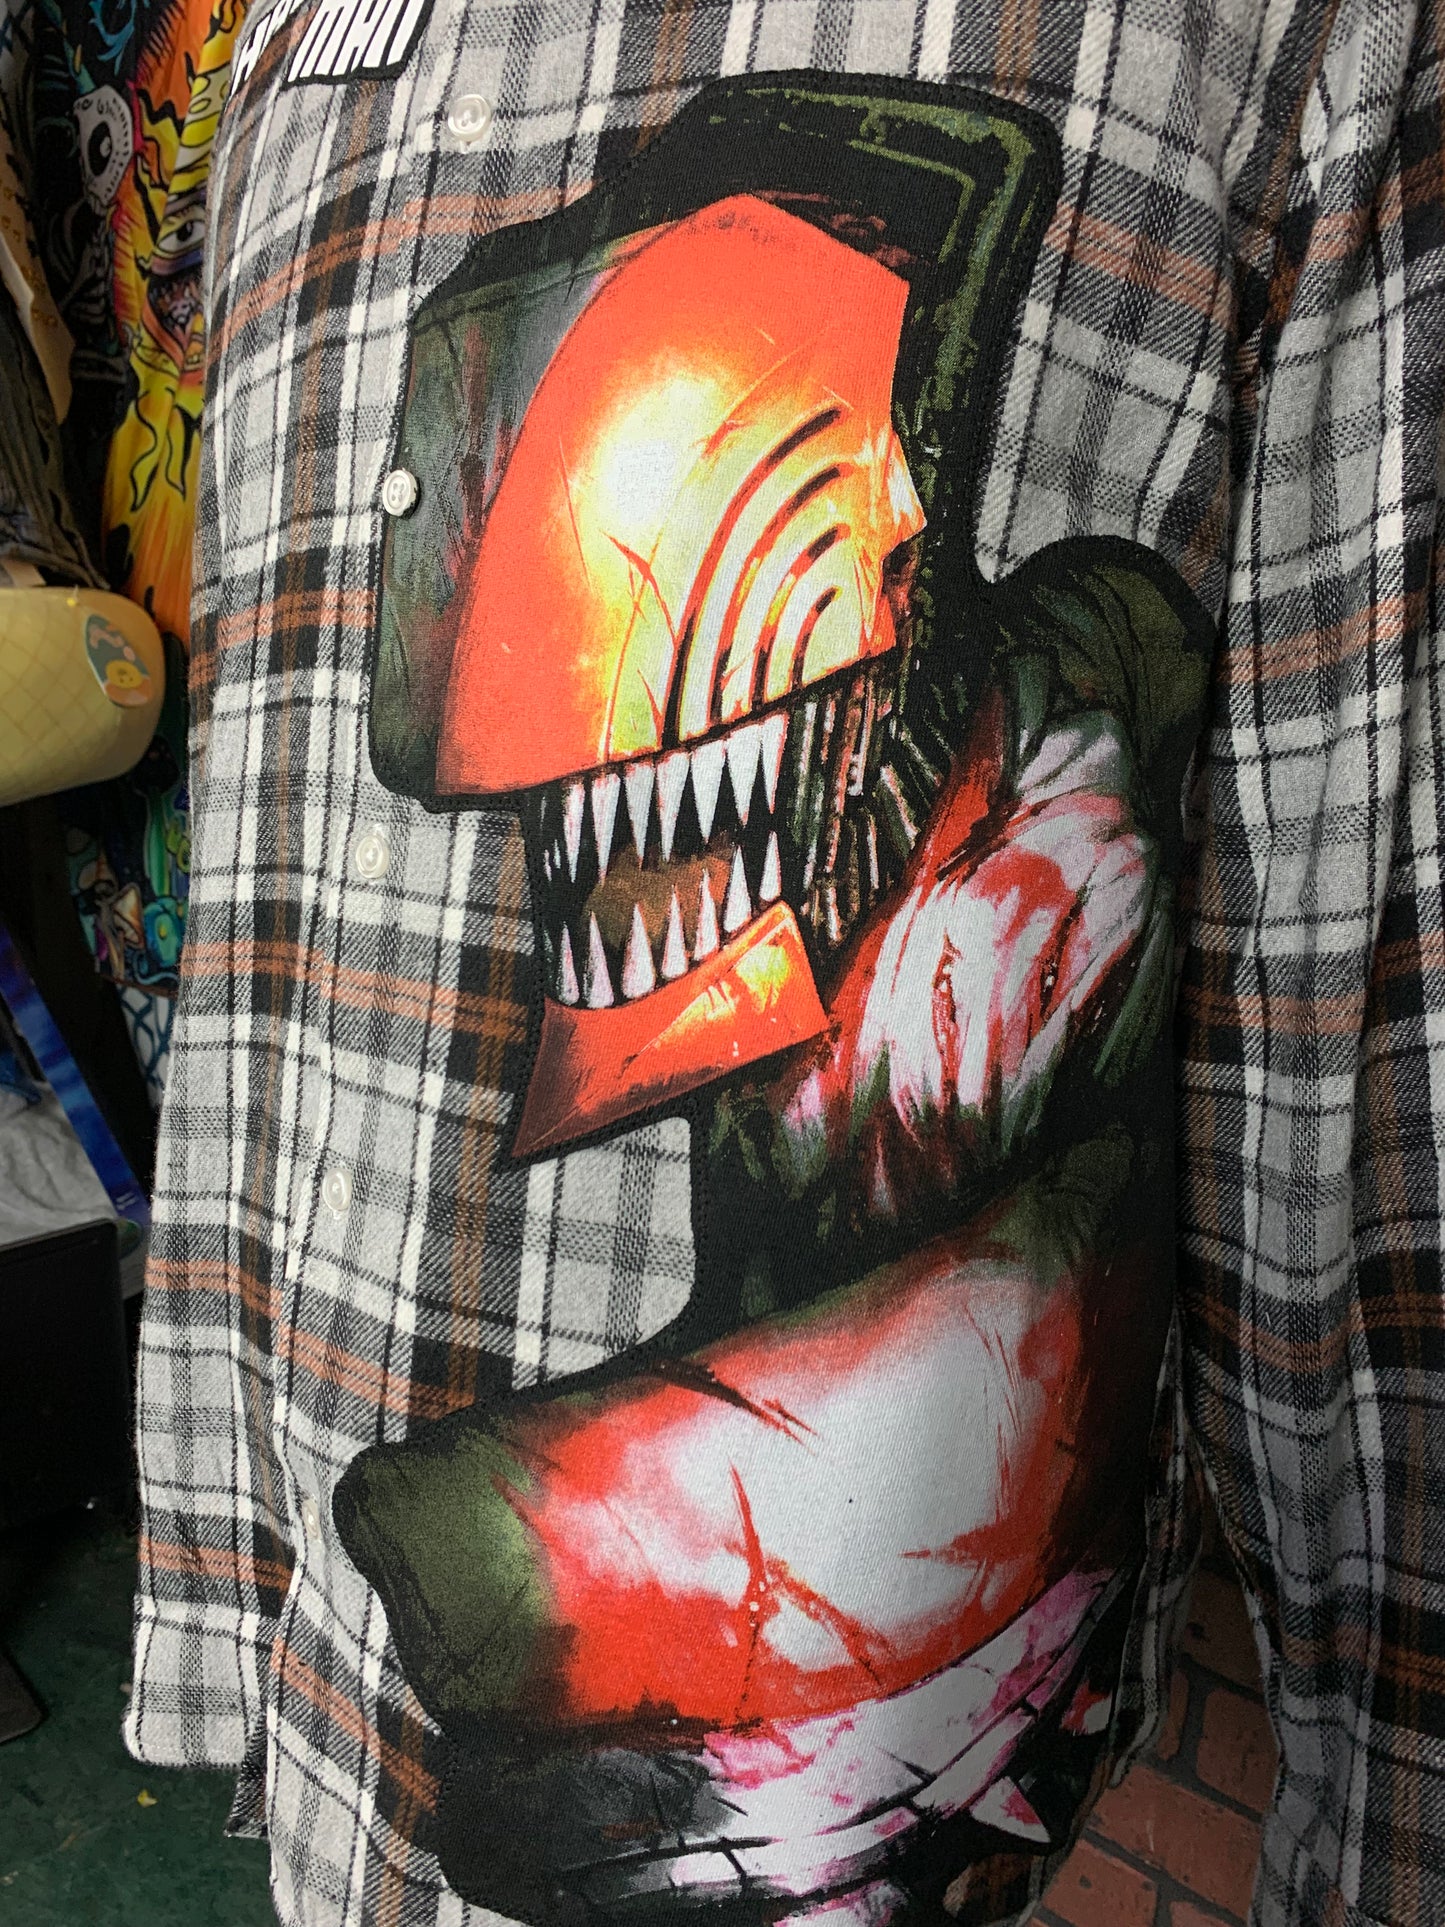 Chainsaw Man Flannel Shirt Custom Rework XL